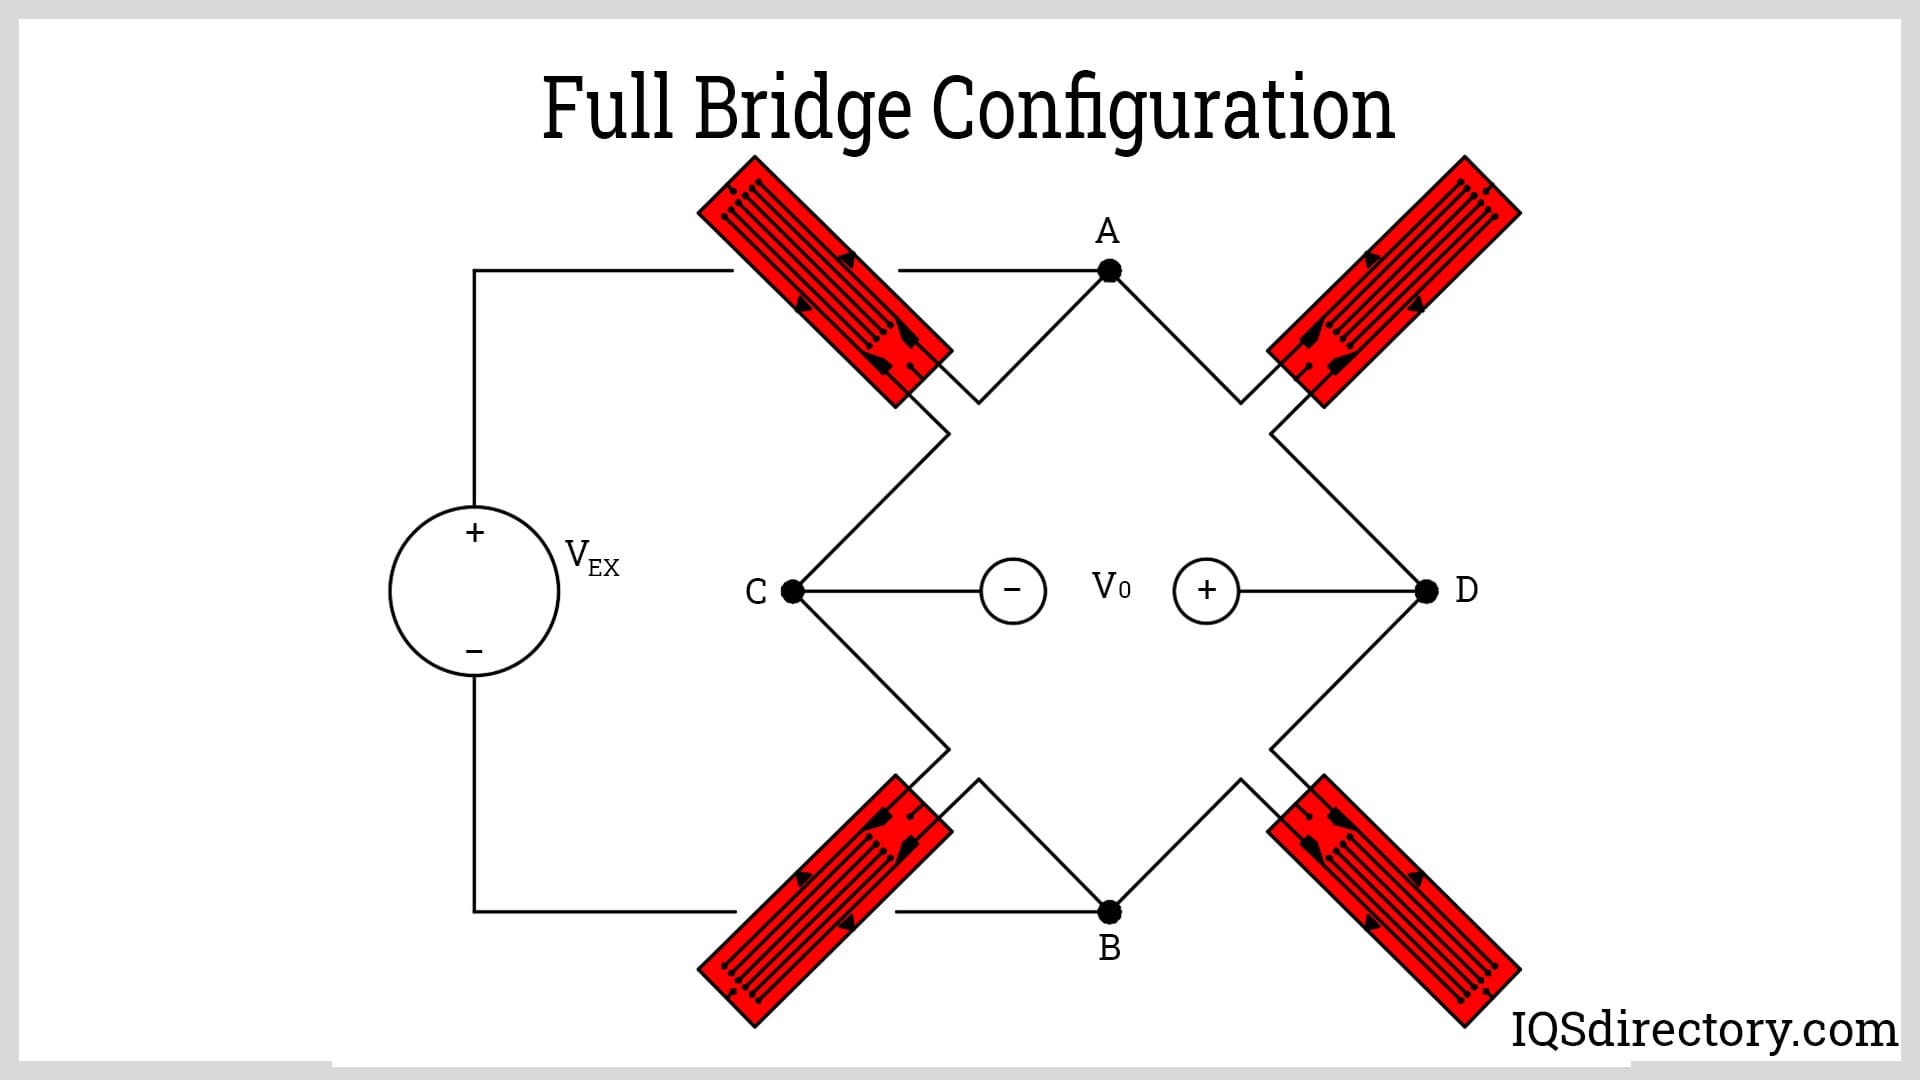 Full Bridge Configuration